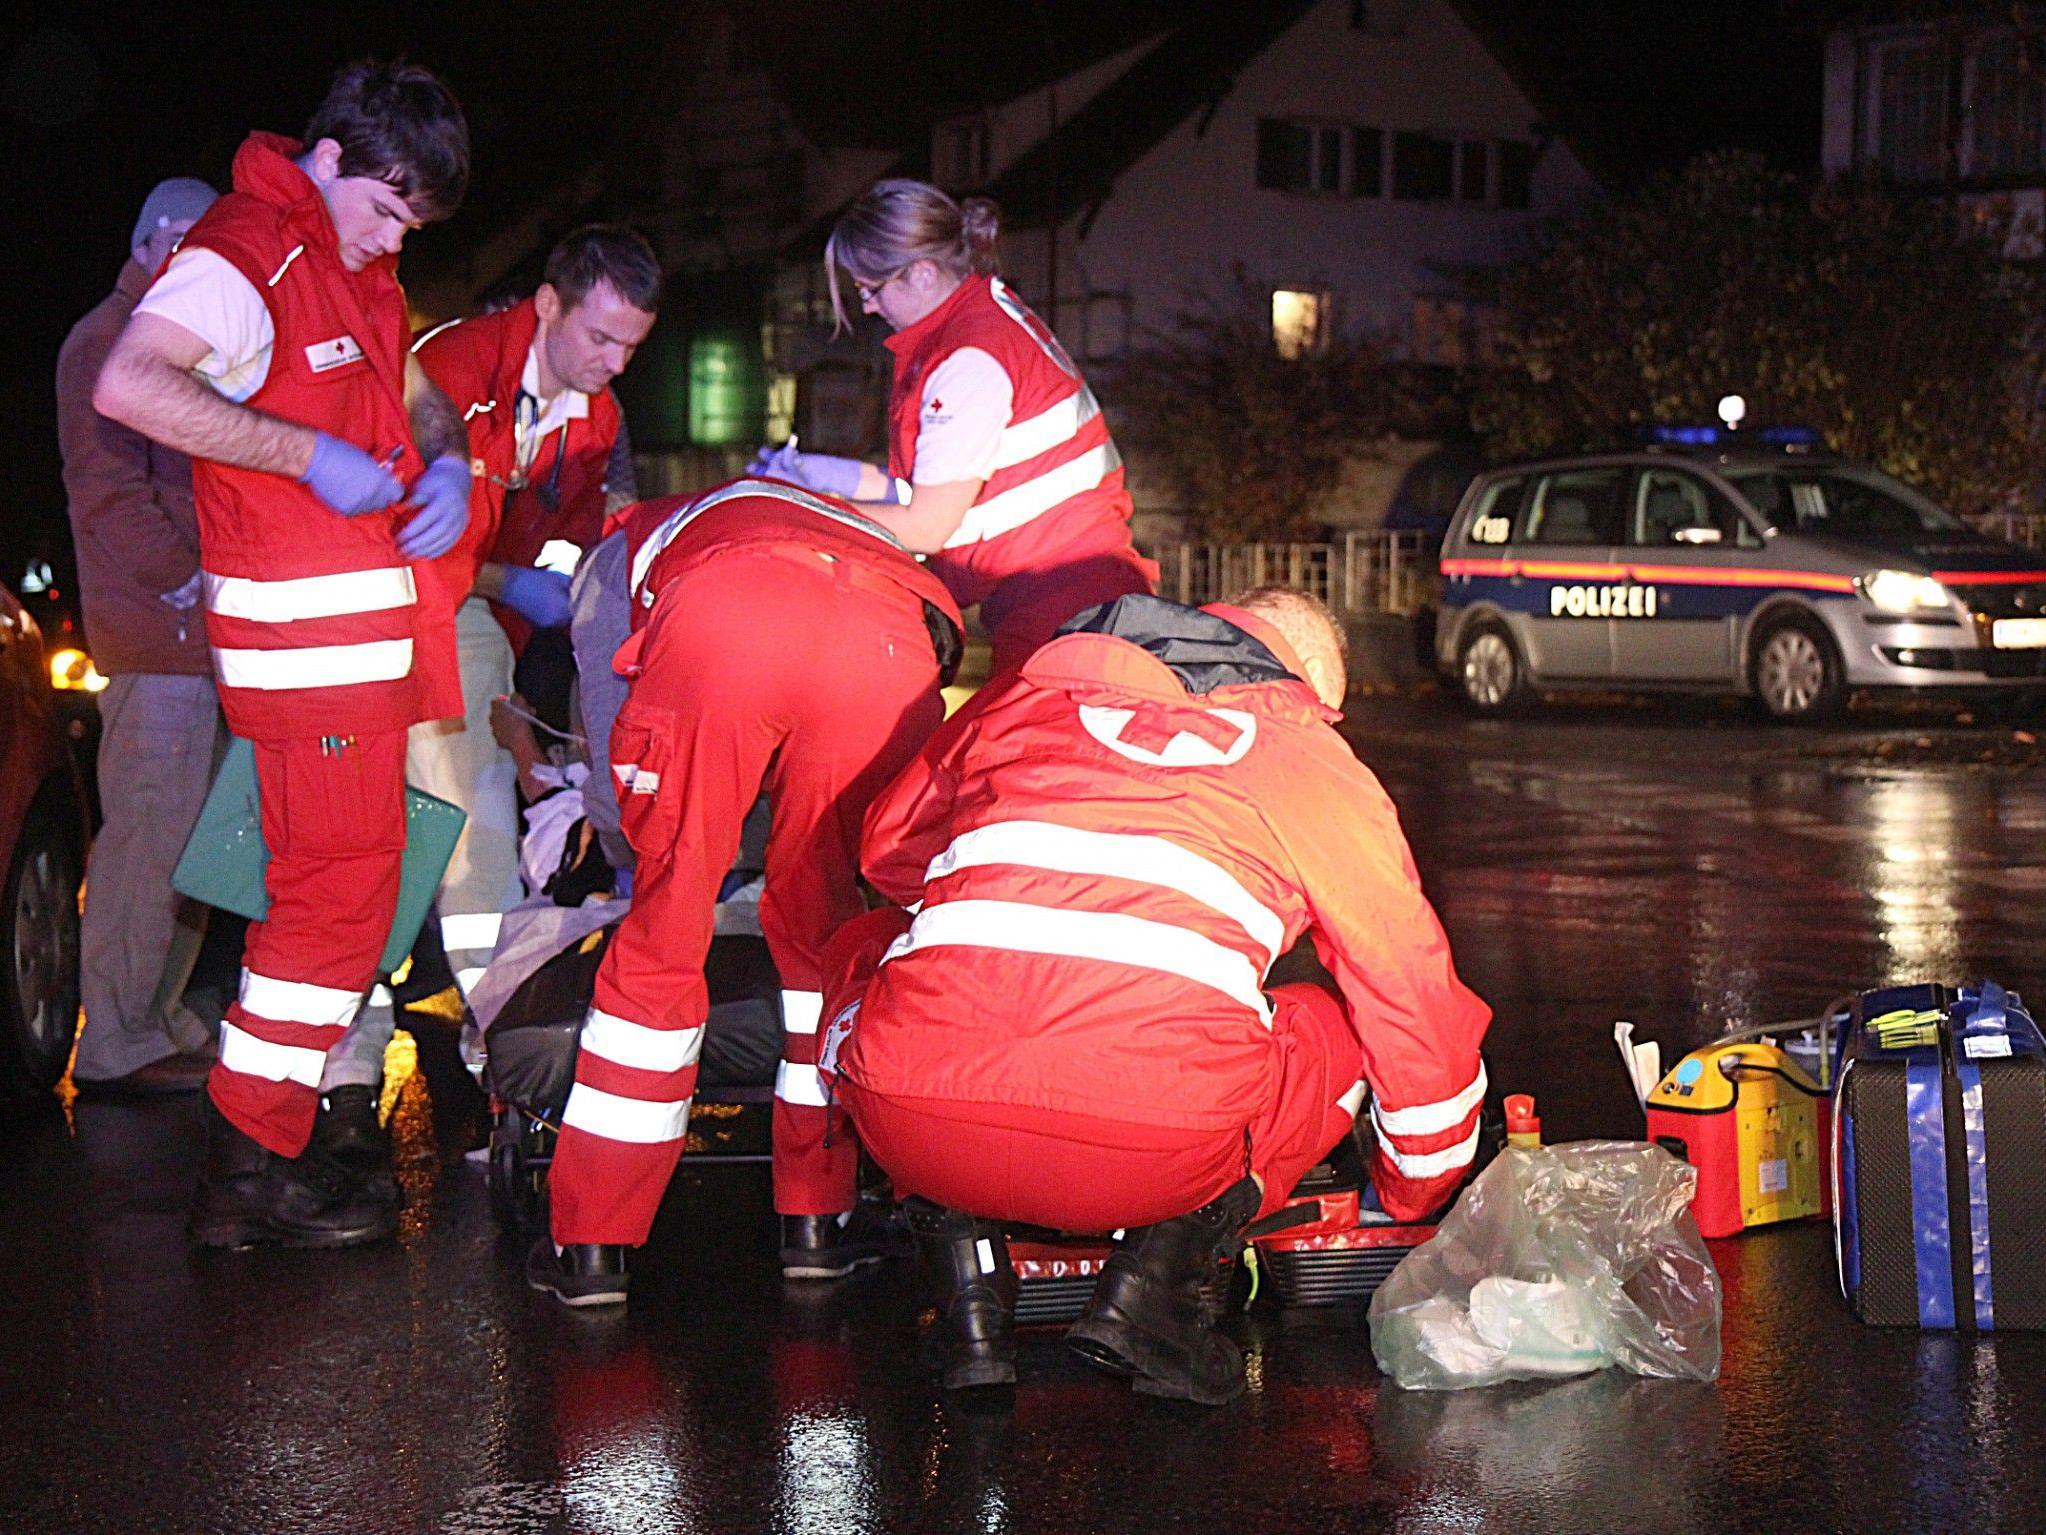 Rettungskräfte kümmern sich um die Verletzte.